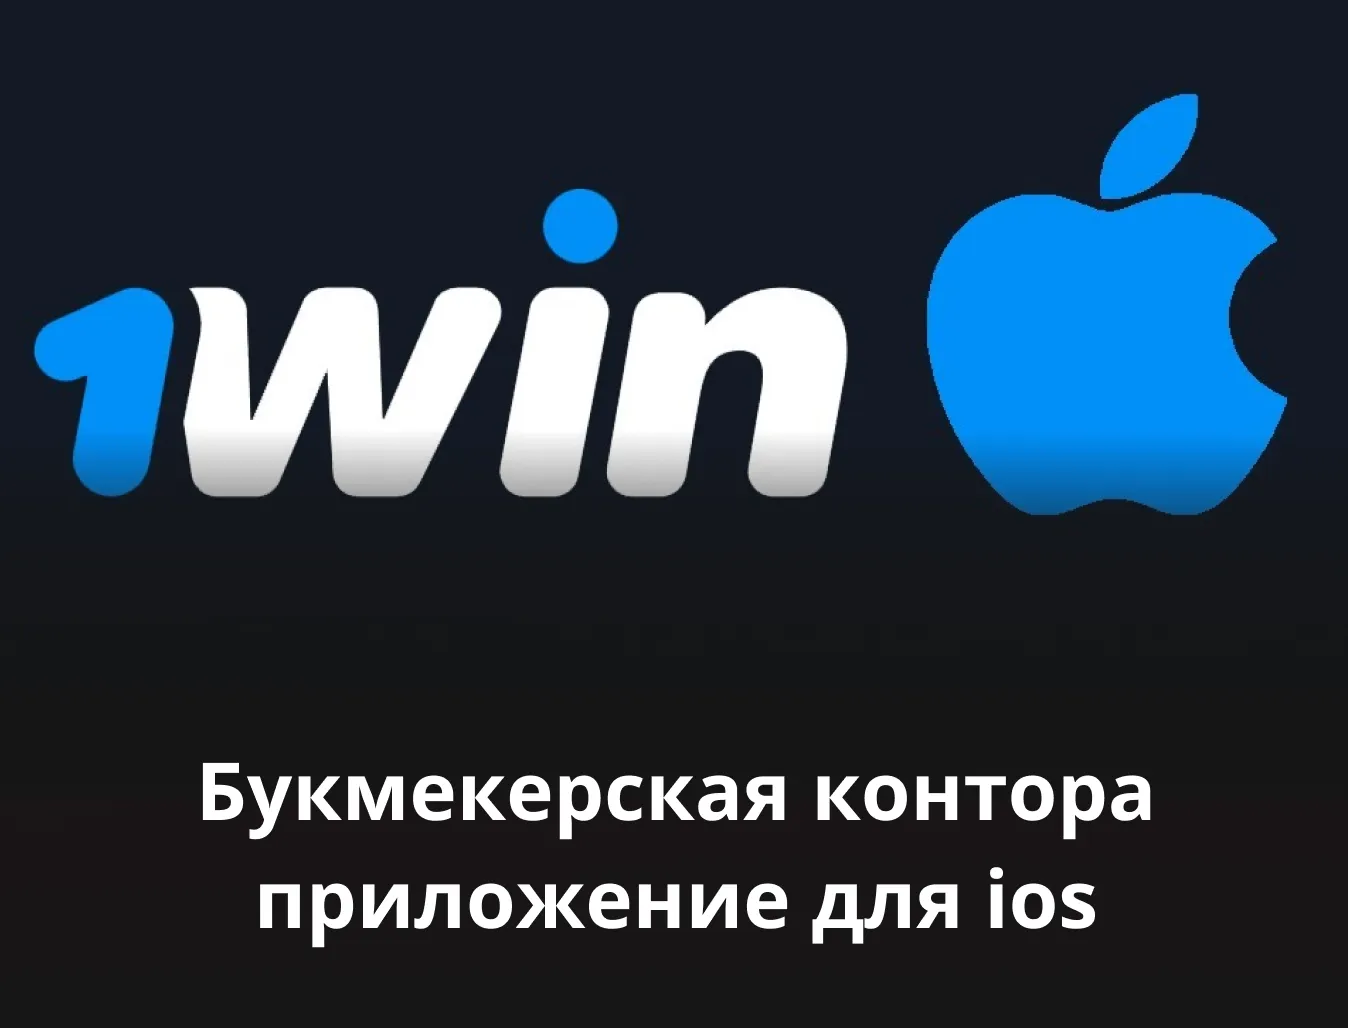 1win iphone